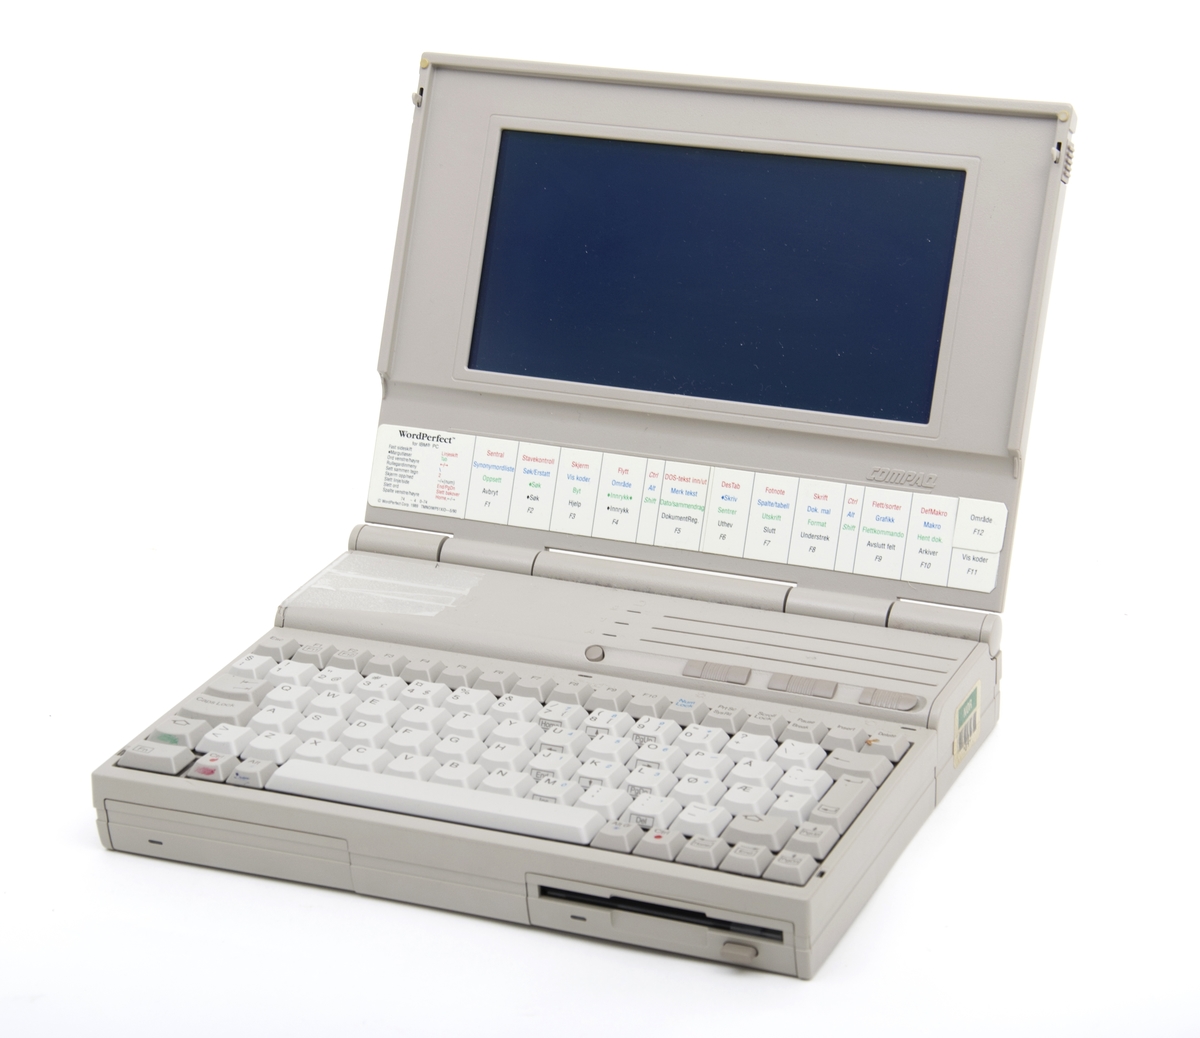 En lys grå PC med lader. Datamaskinen er en av de eldste bærebare PC i denne størrelsen og en av de først med både innebygd harddisk og en diskettstastjon. Batteristasjonen er reparert med tape. PC er ellers i god stand og virker fortsatt.